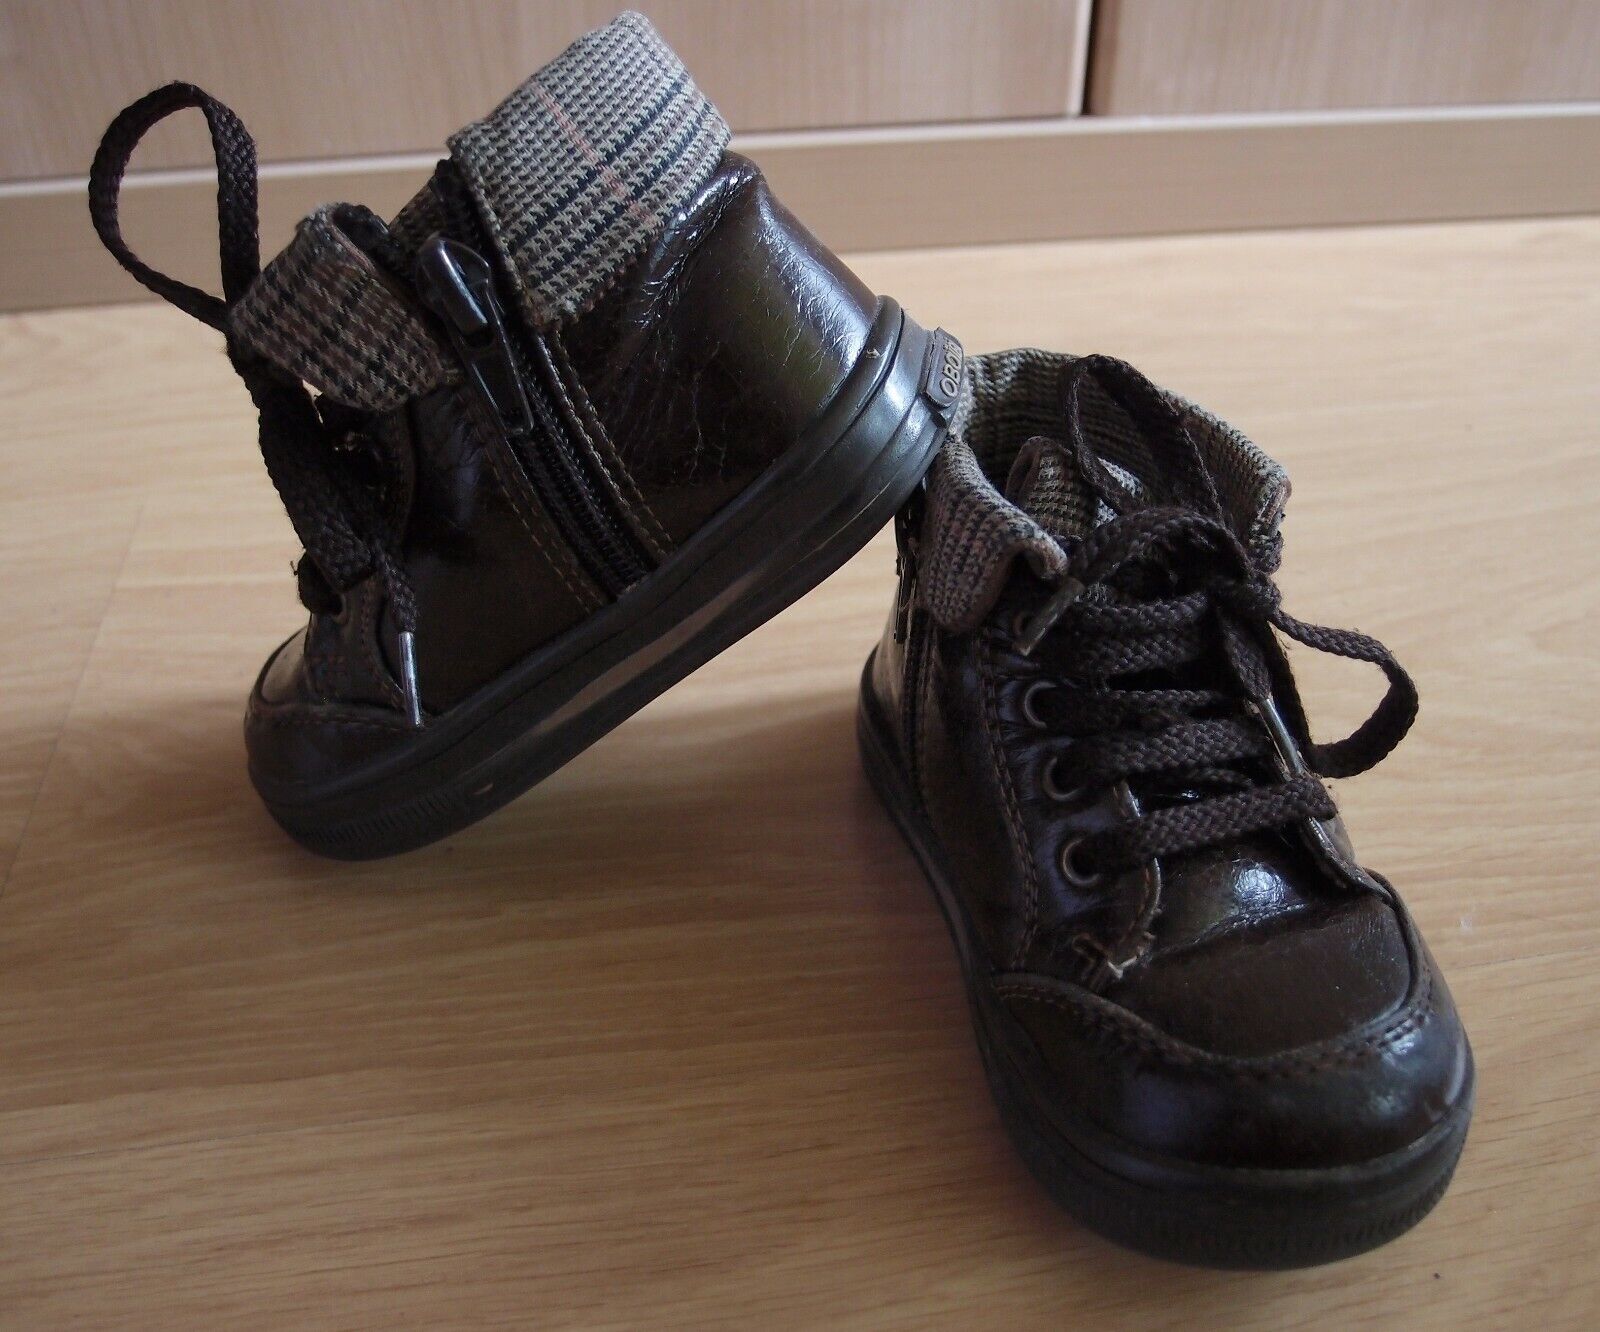 Zapatos niño Nº 21 Obaibi. COMBINO ENVÍOS